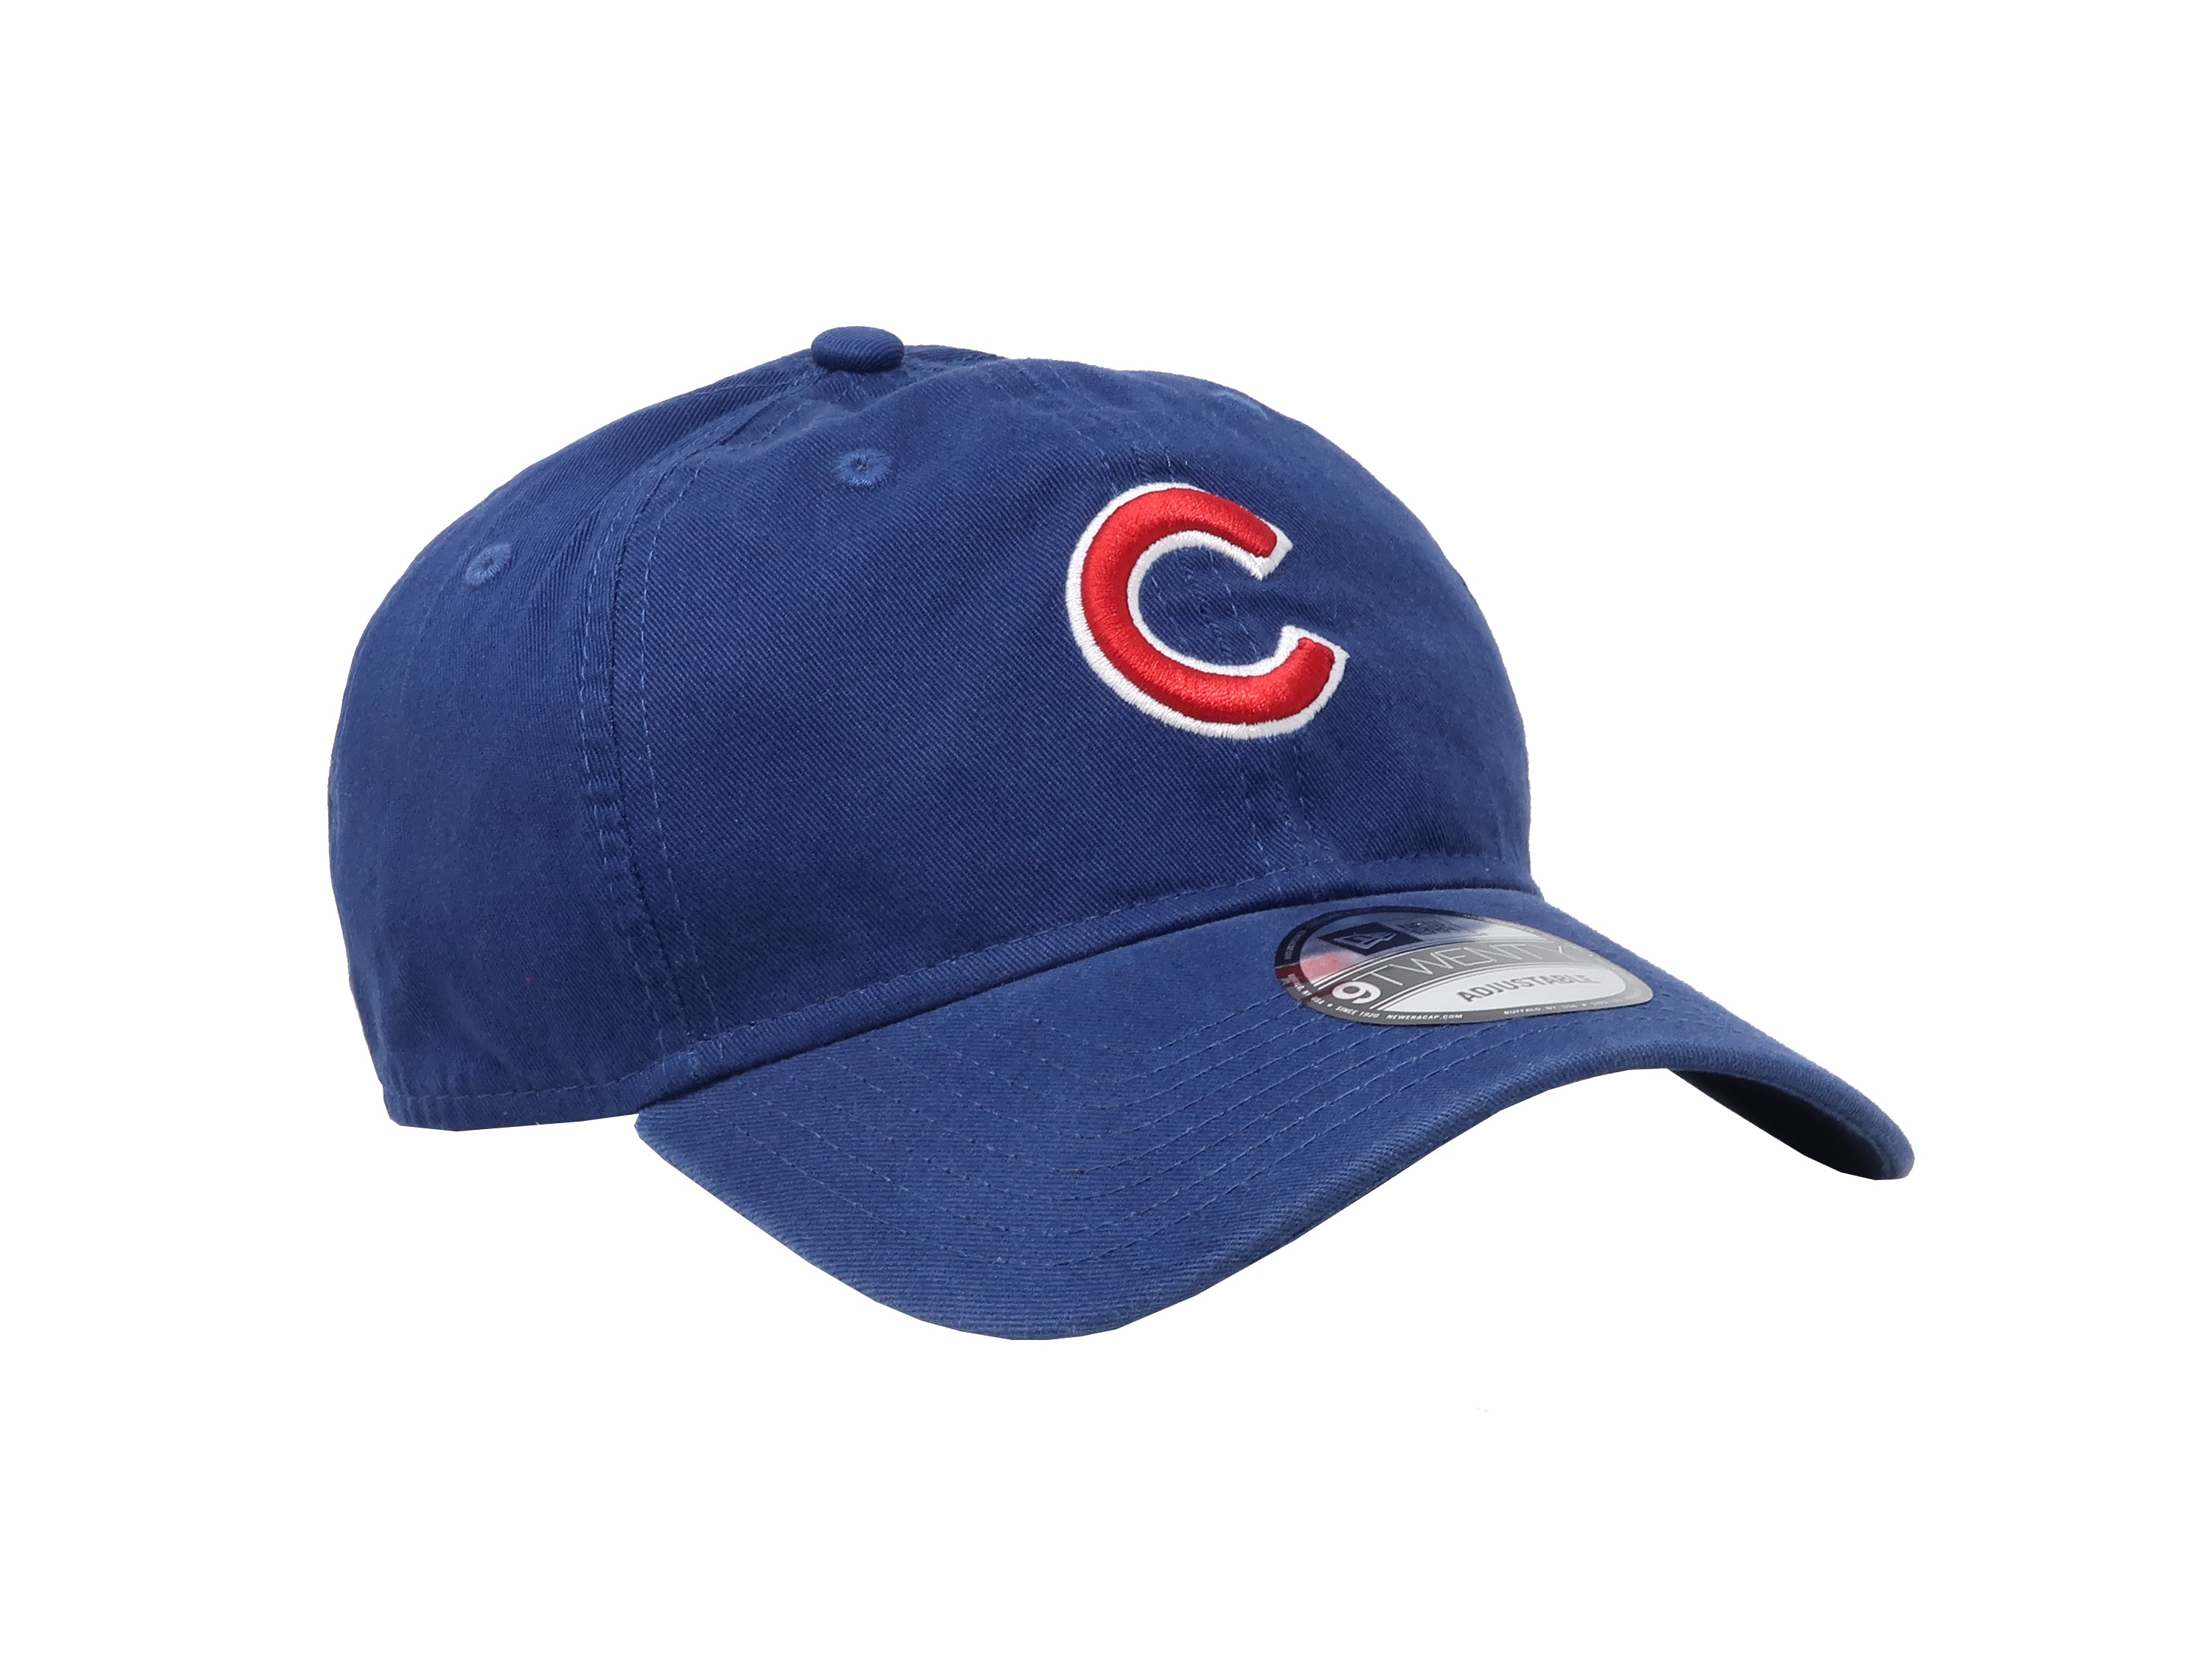 New Era 9Twenty MLB Chicago Cubs Core Classic Royal Blue Adjustable Cap